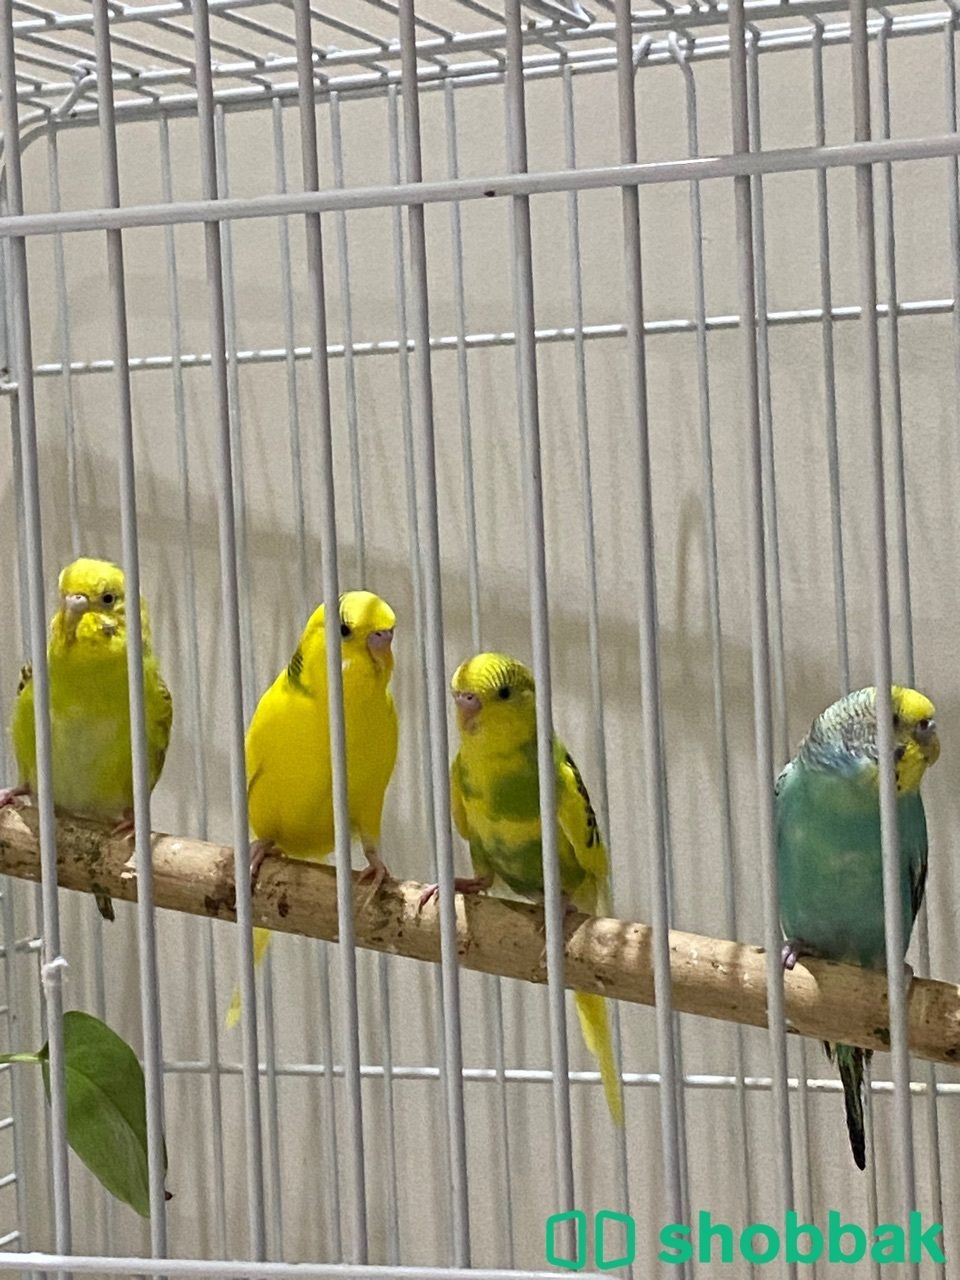 عصافير بادجي للبيع Shobbak Saudi Arabia